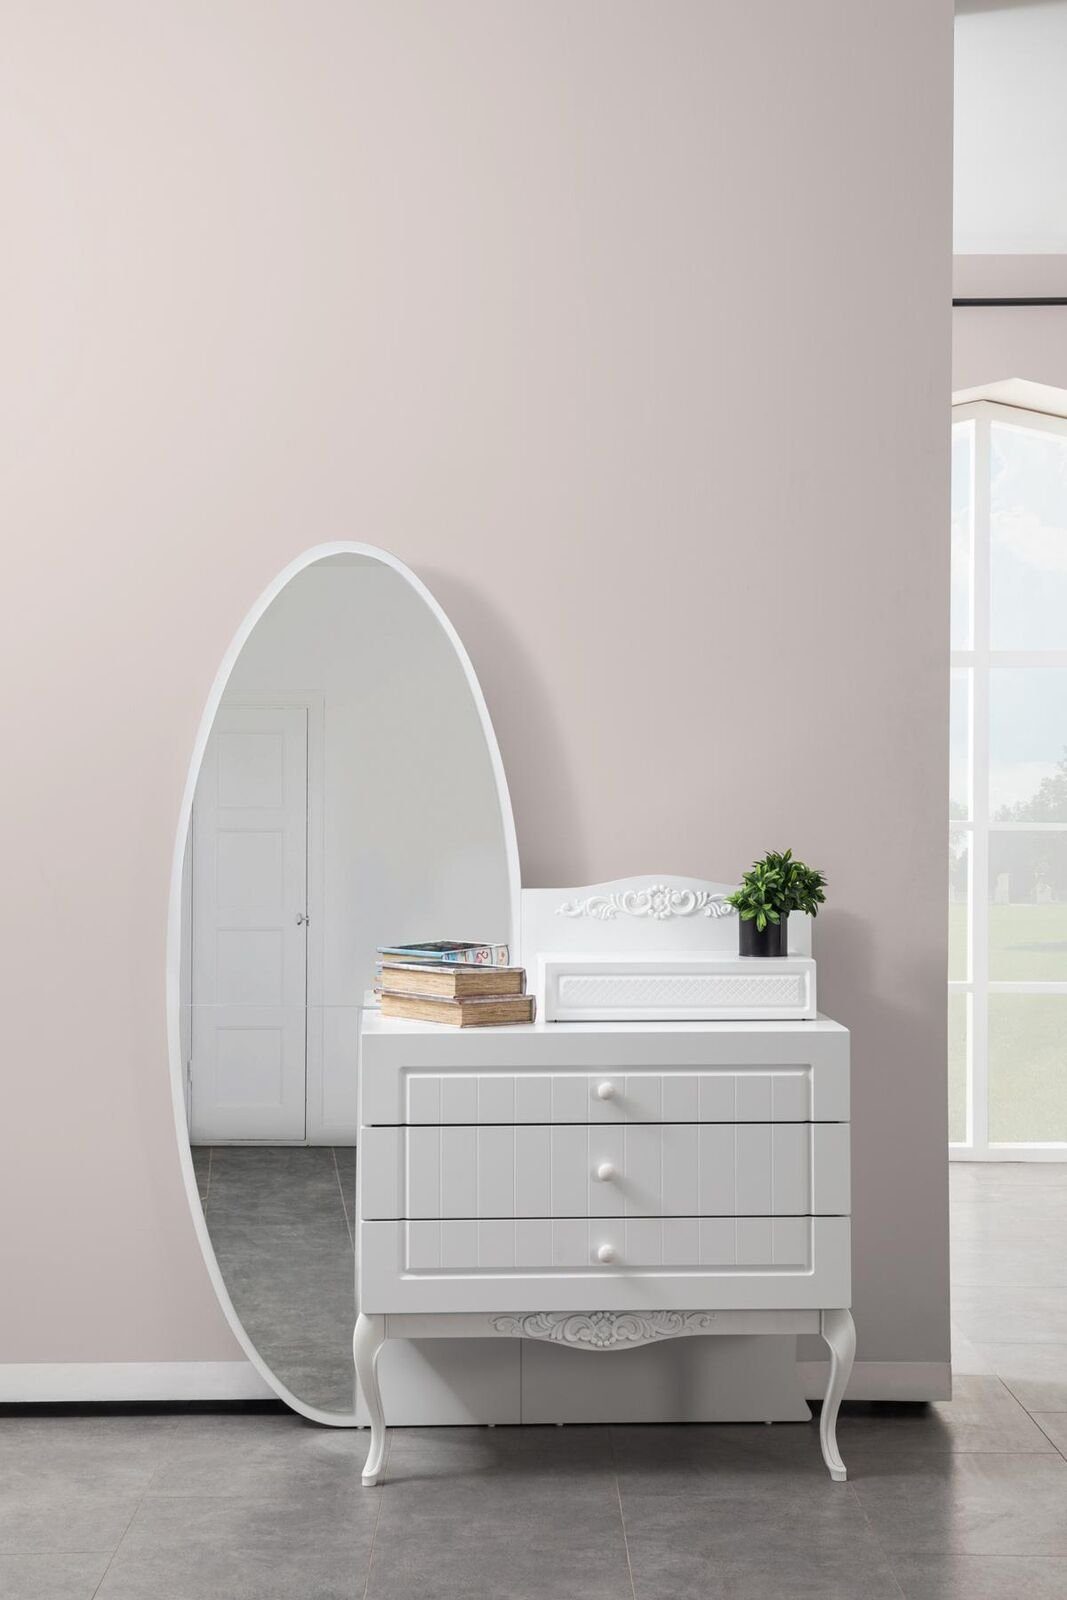 JVmoebel Kommode Kommode mit Spiegel Weiße Neu Farbe Möbel Design Jugendzimmer Holz